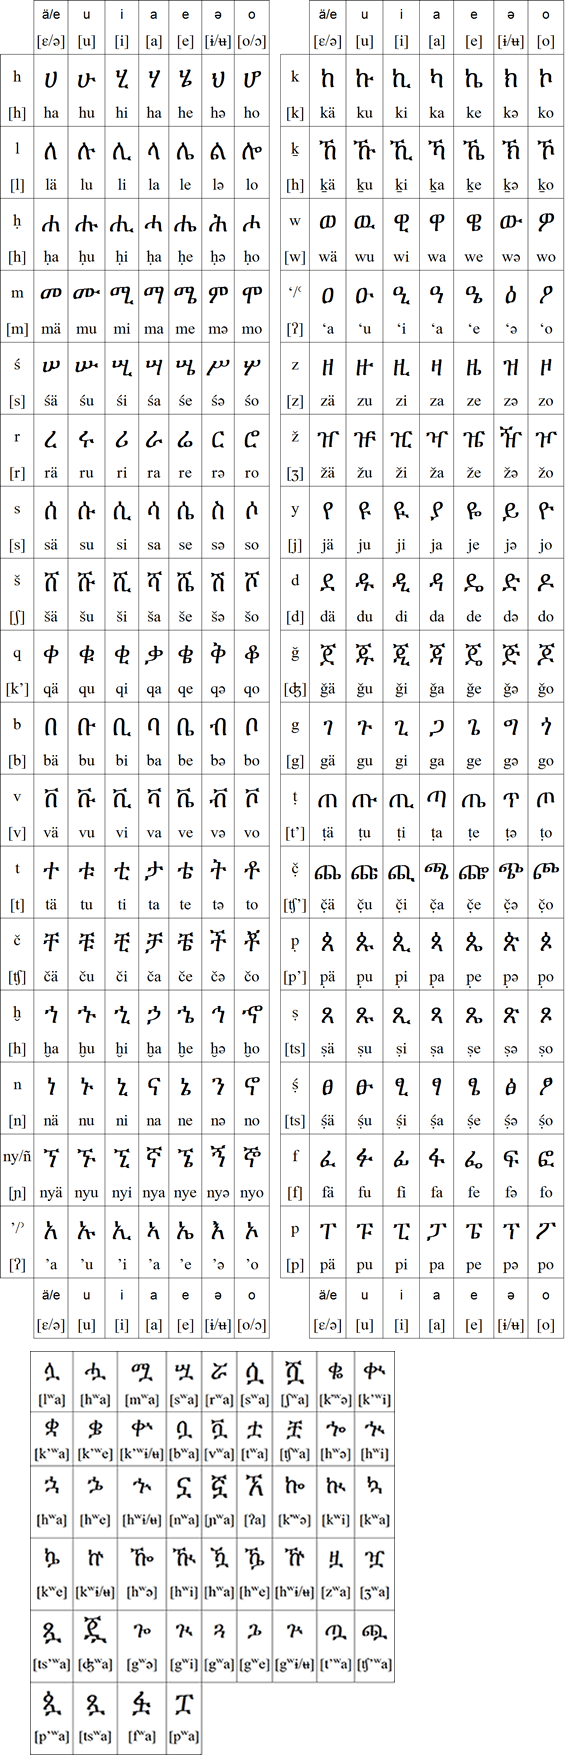 The Ge'ez (Ethiopic) script for Amharic